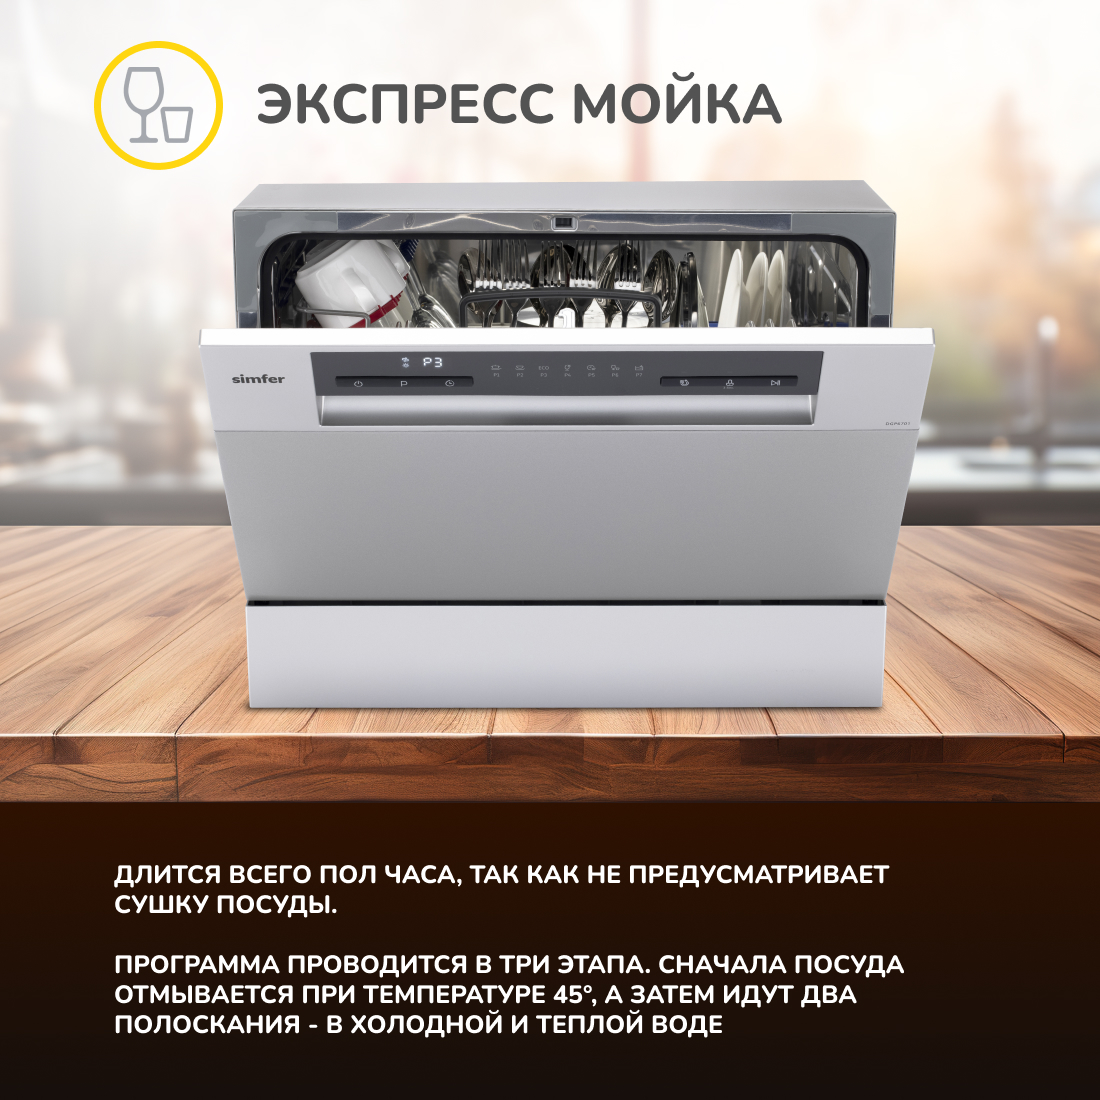 Настольная посудомоечная машина Simfer DGP6701, цвет серебристый - фото 6